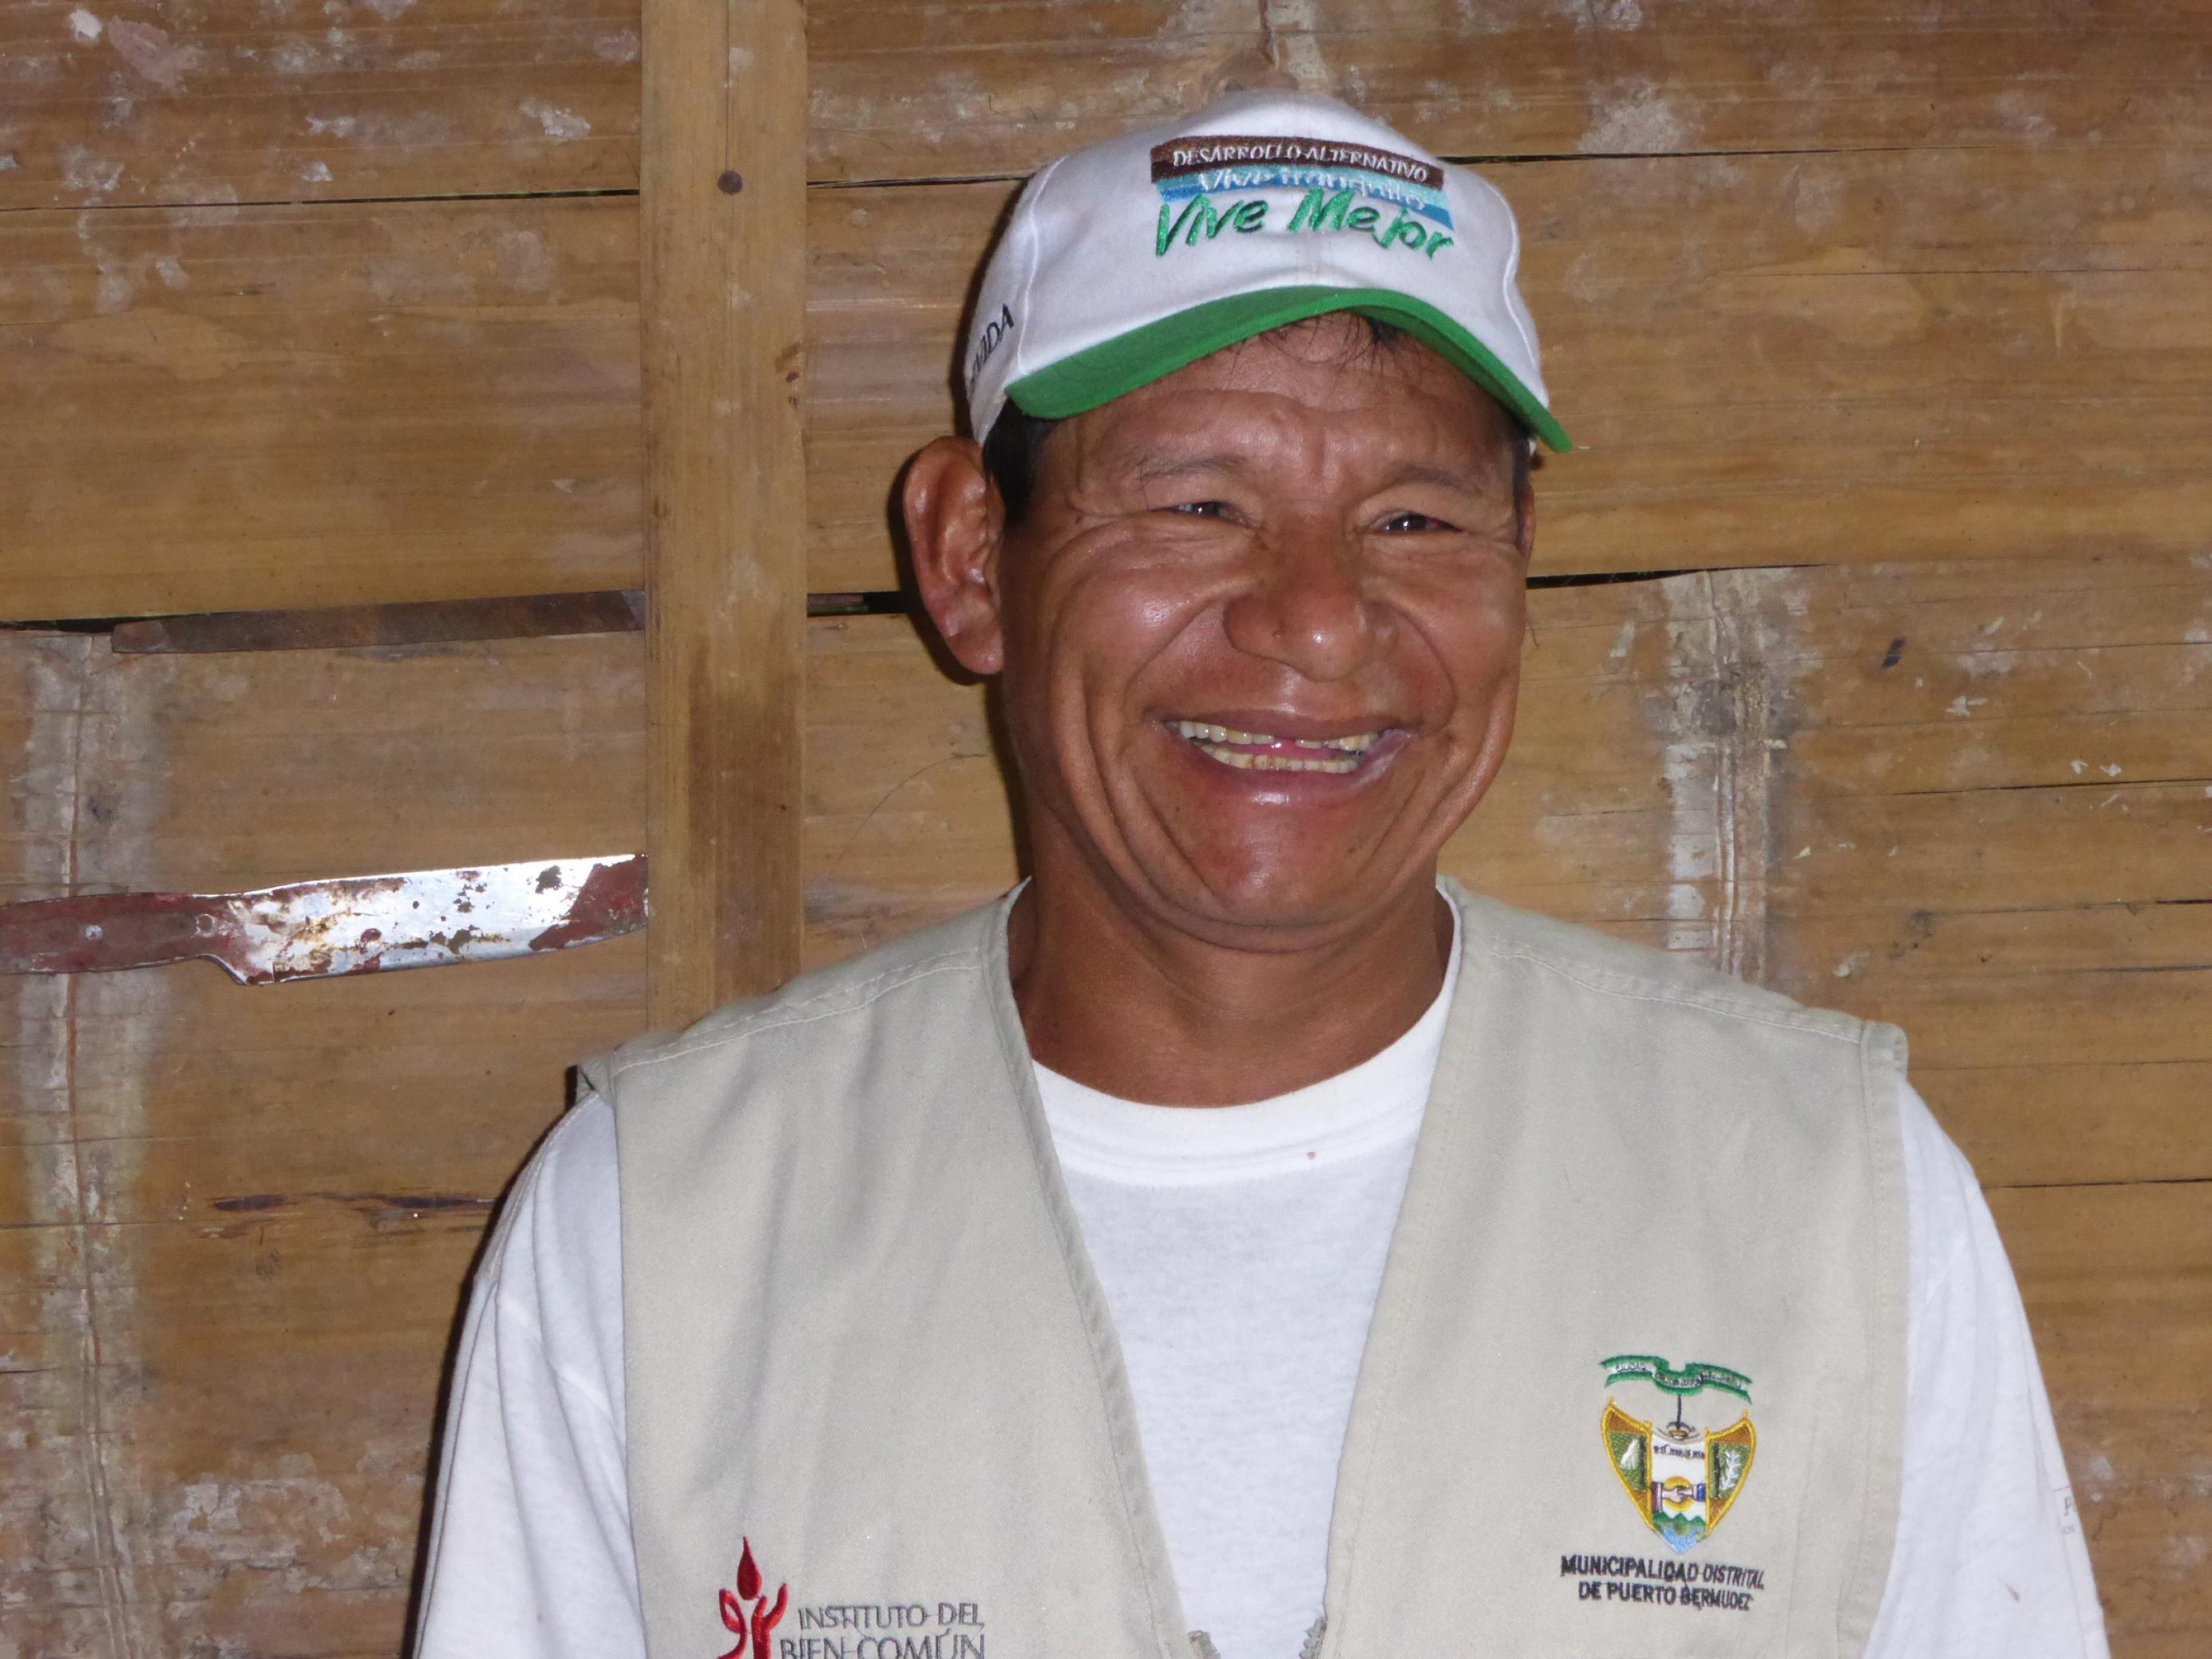 Mann, etwa 50 Jahre alt, indigen, mit weißer Schildmütze, lacht in die Kamera.